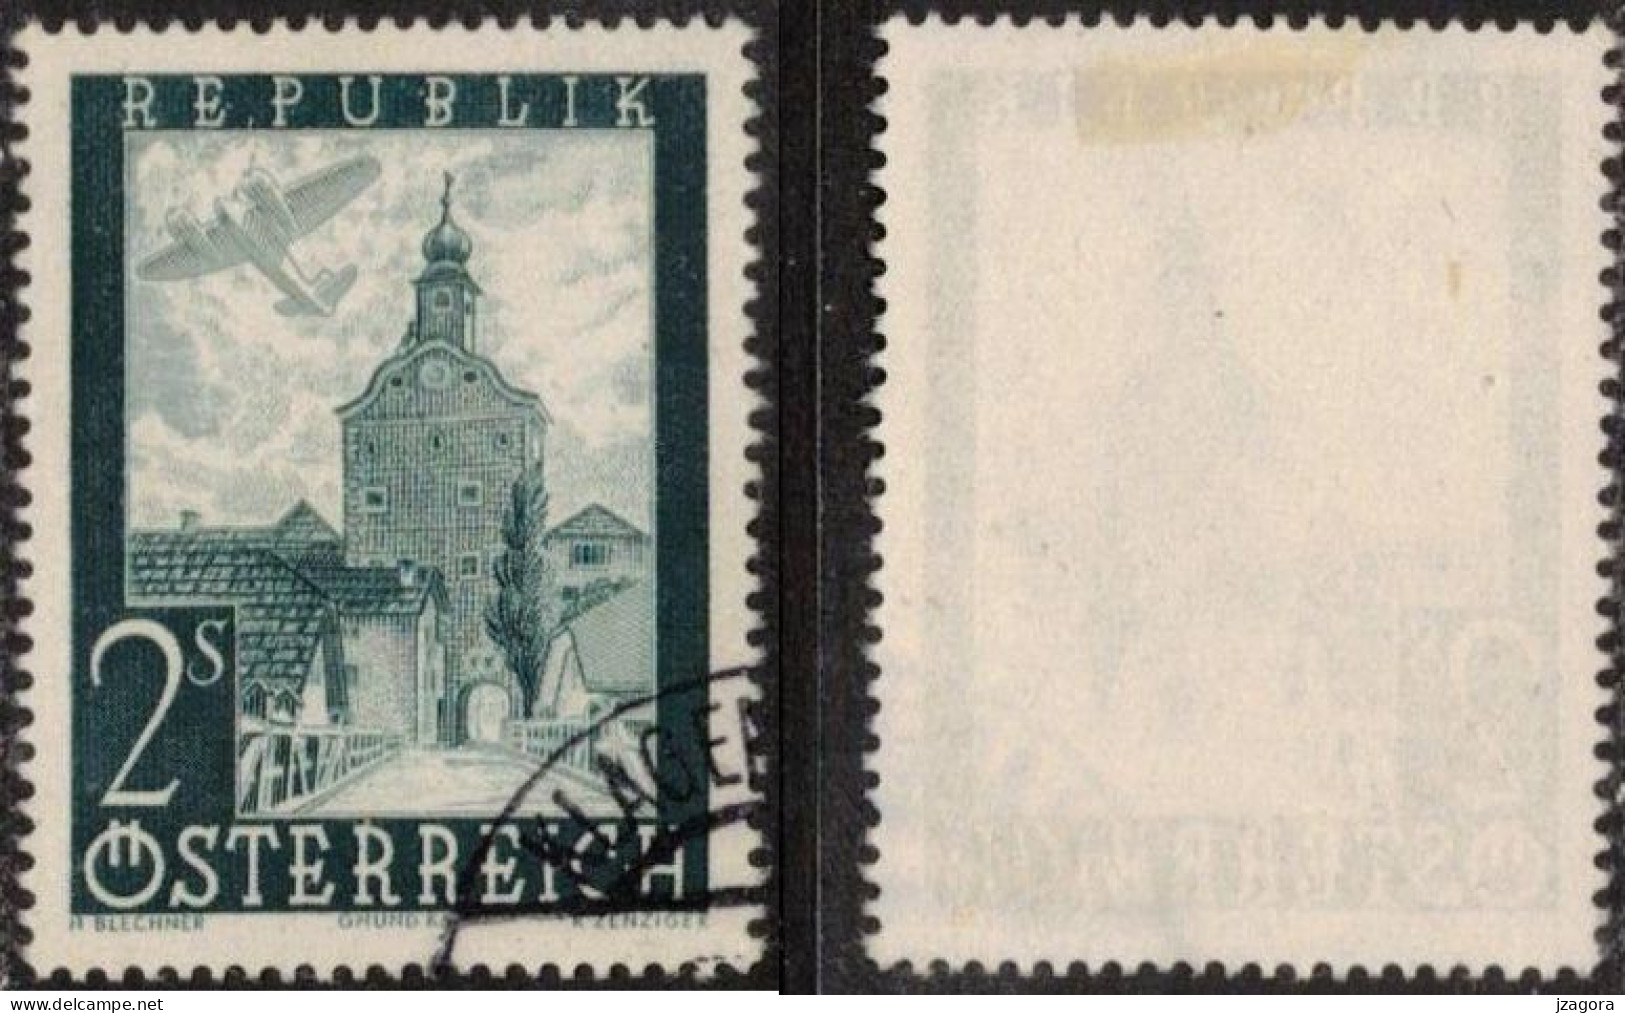 ARCHITECTURE HISTORY STADTTURM CITY TOWER GRUMD AUSTRIA ÖSTERREICH AUTRICHE 1947 MI 824 Sc C49 Flugpost Air Mail - Gebraucht